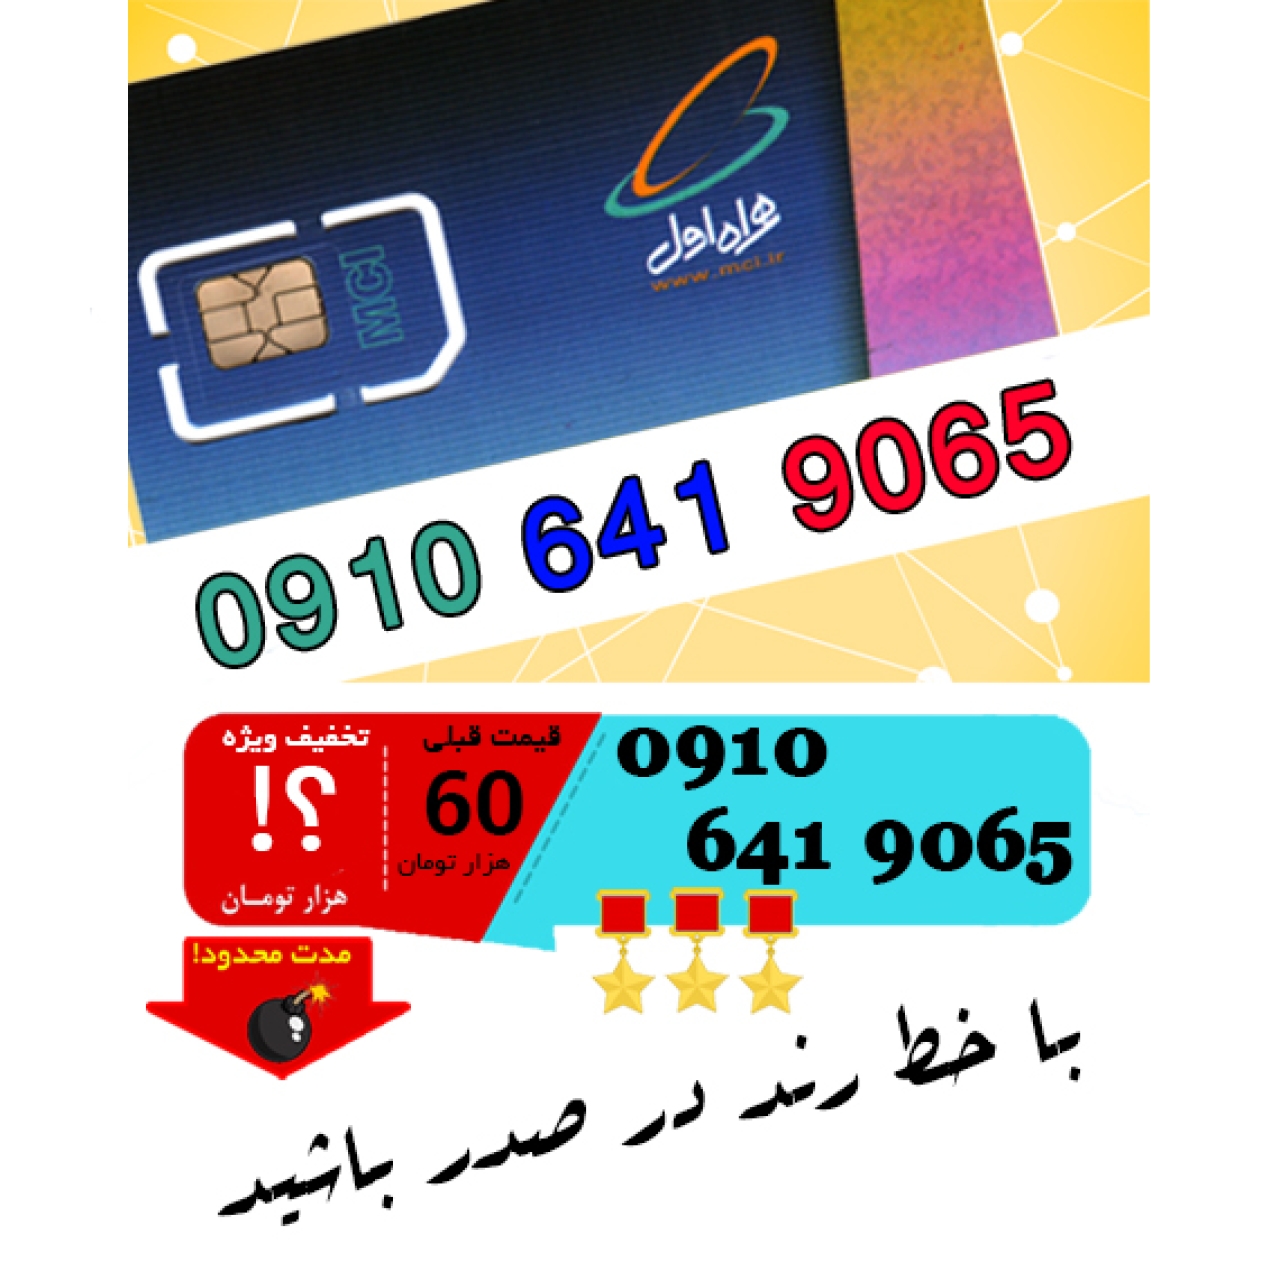 سیم کارت اعتباری رند همراه اول 09106419065